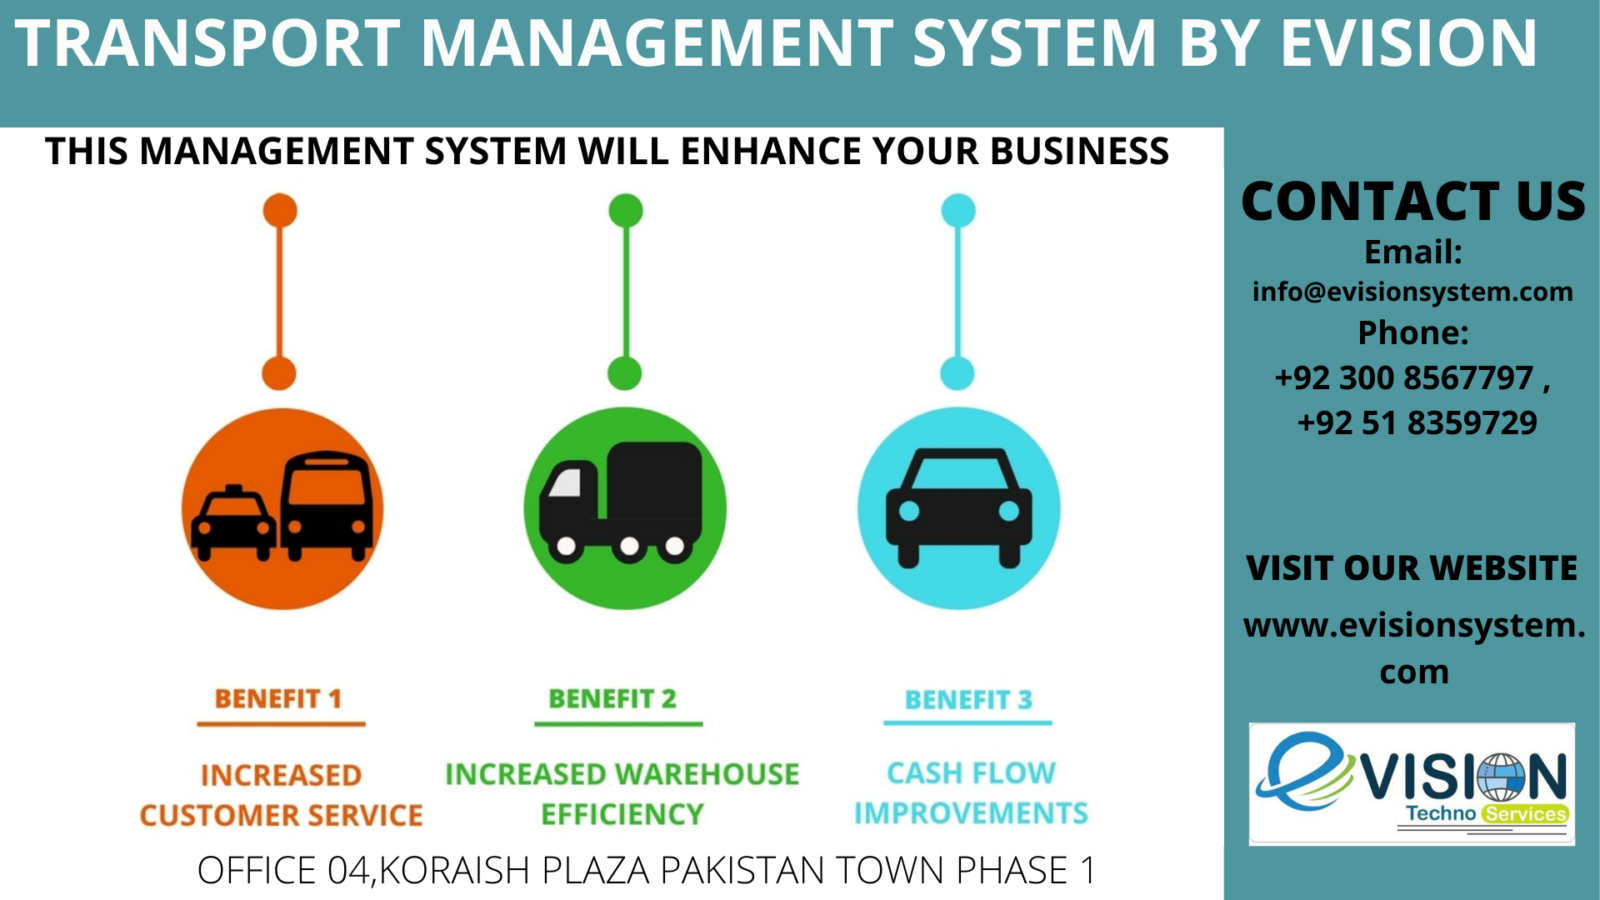 Evision Transport Management System